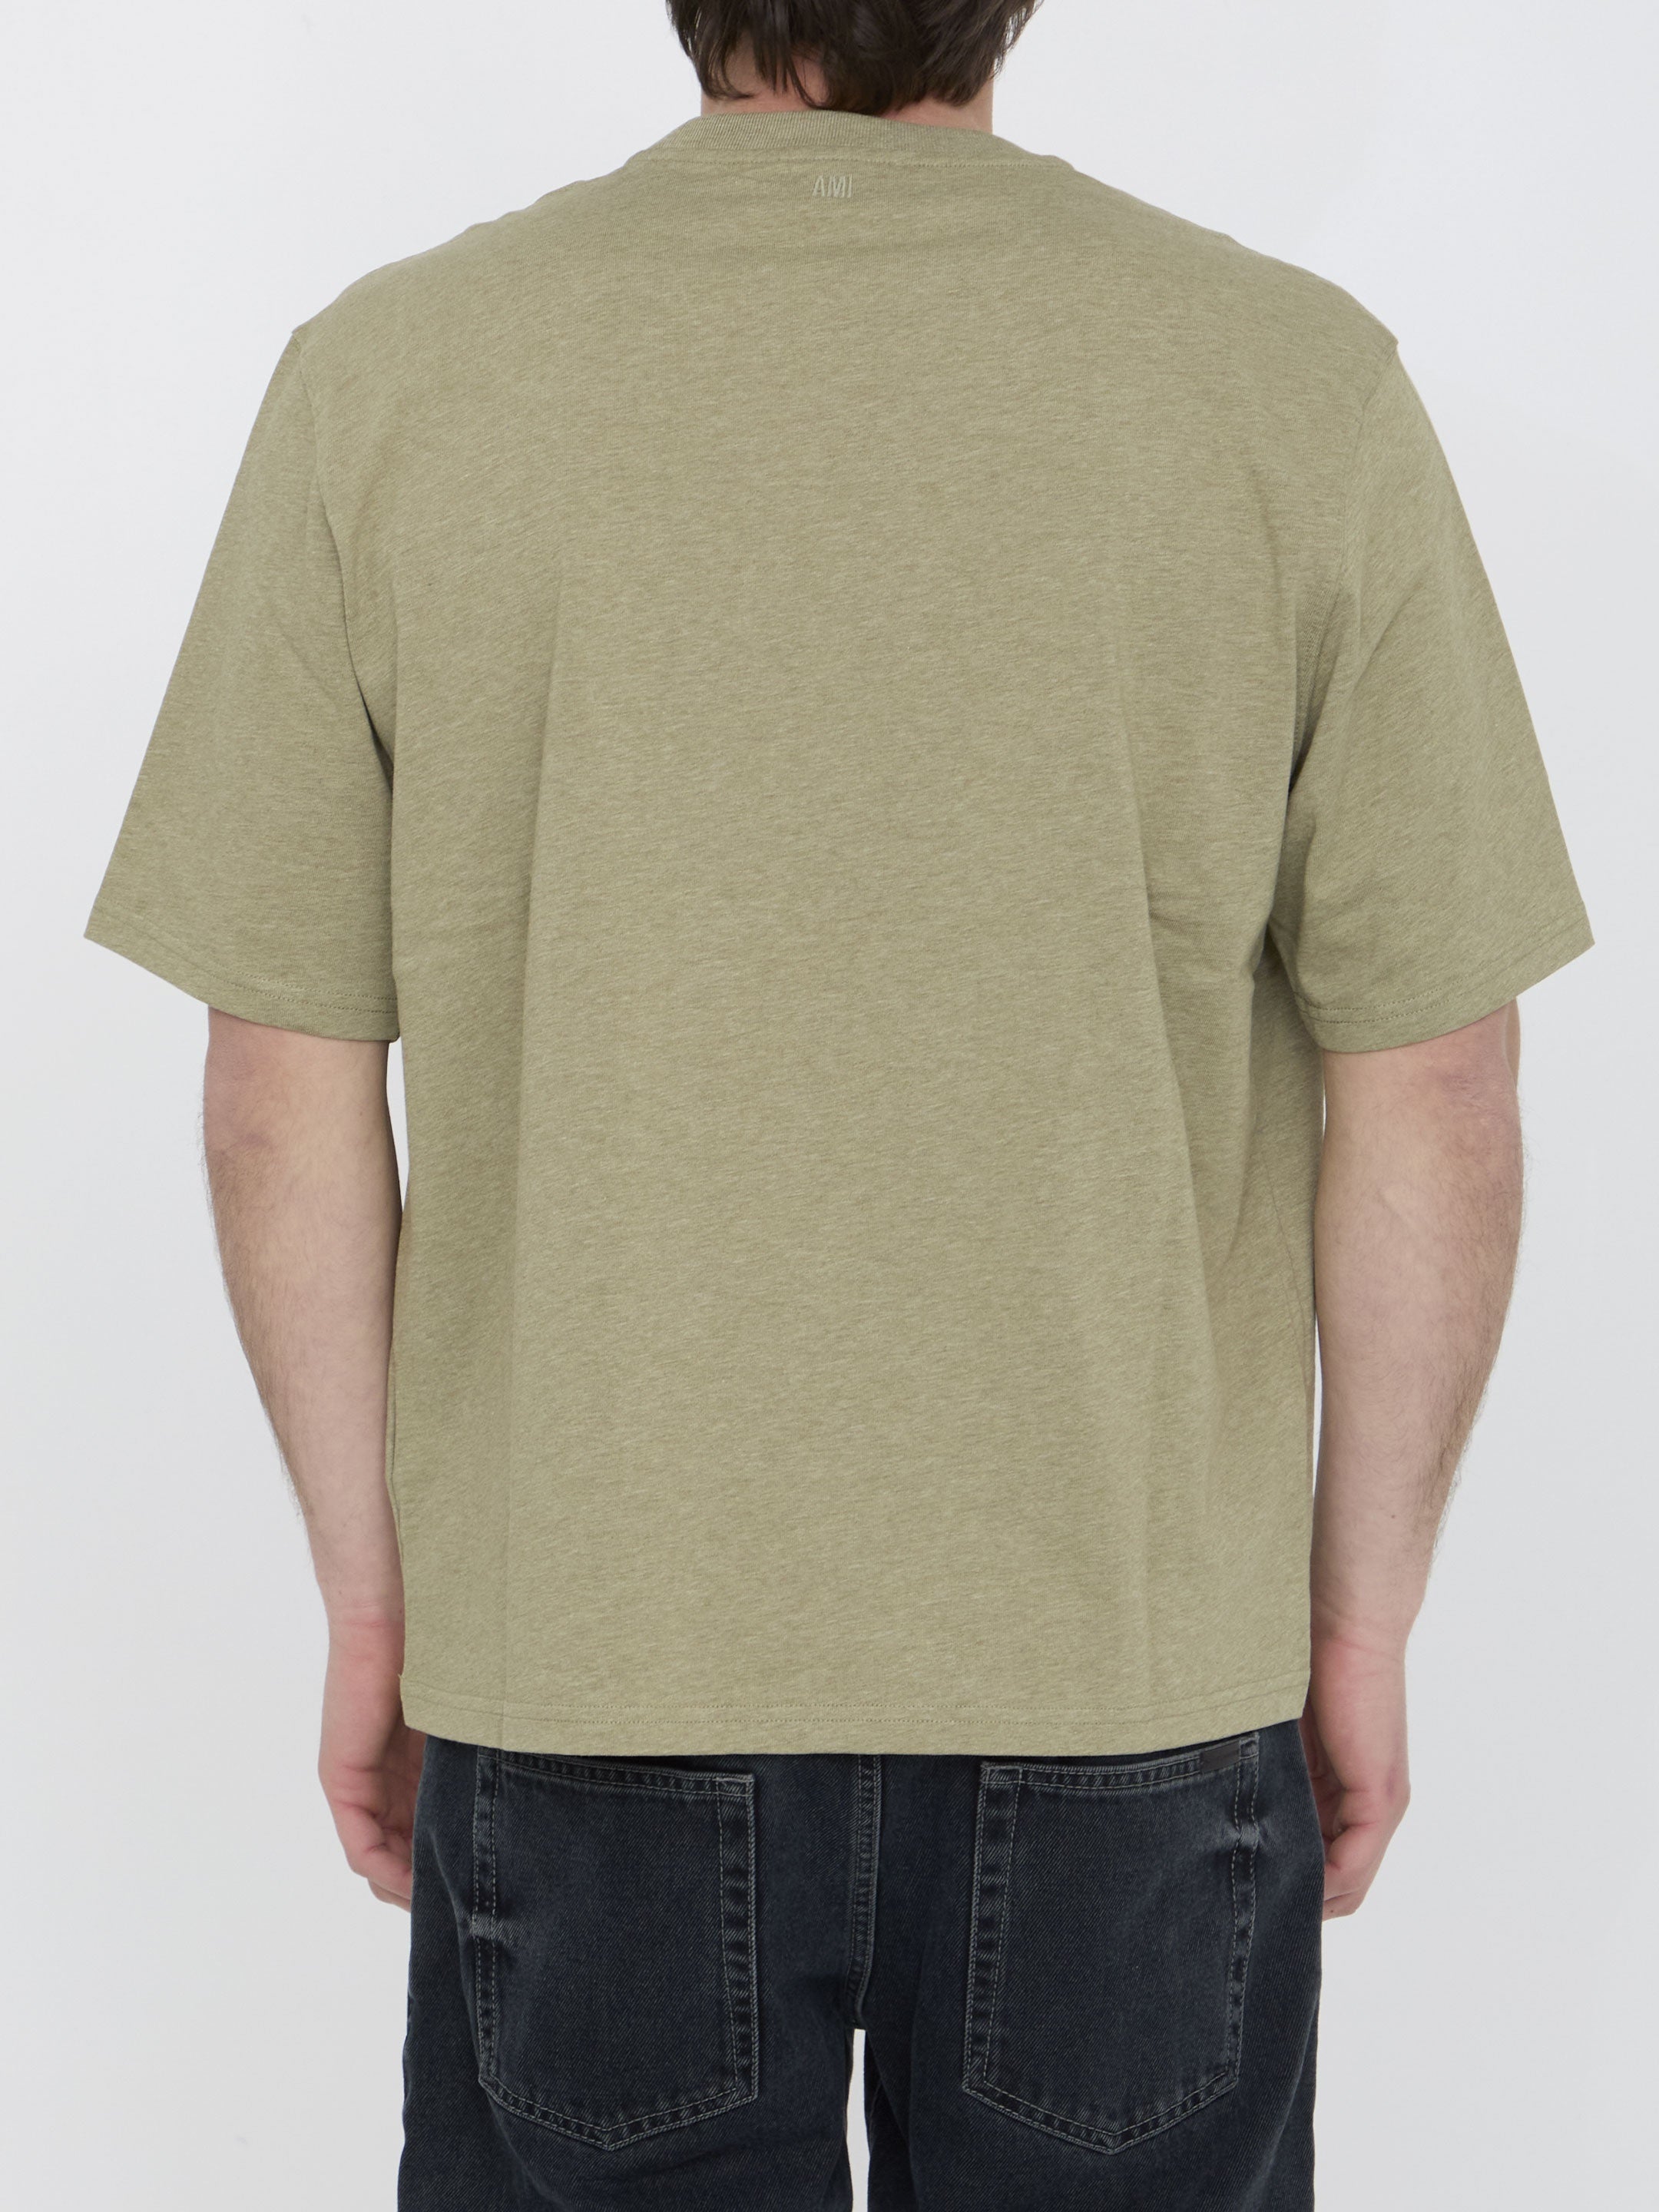 AMI-PARIS-OUTLET-SALE-Ami-De-Coeur-t-shirt-Shirts-M-GREEN-ARCHIVE-COLLECTION-4.jpg